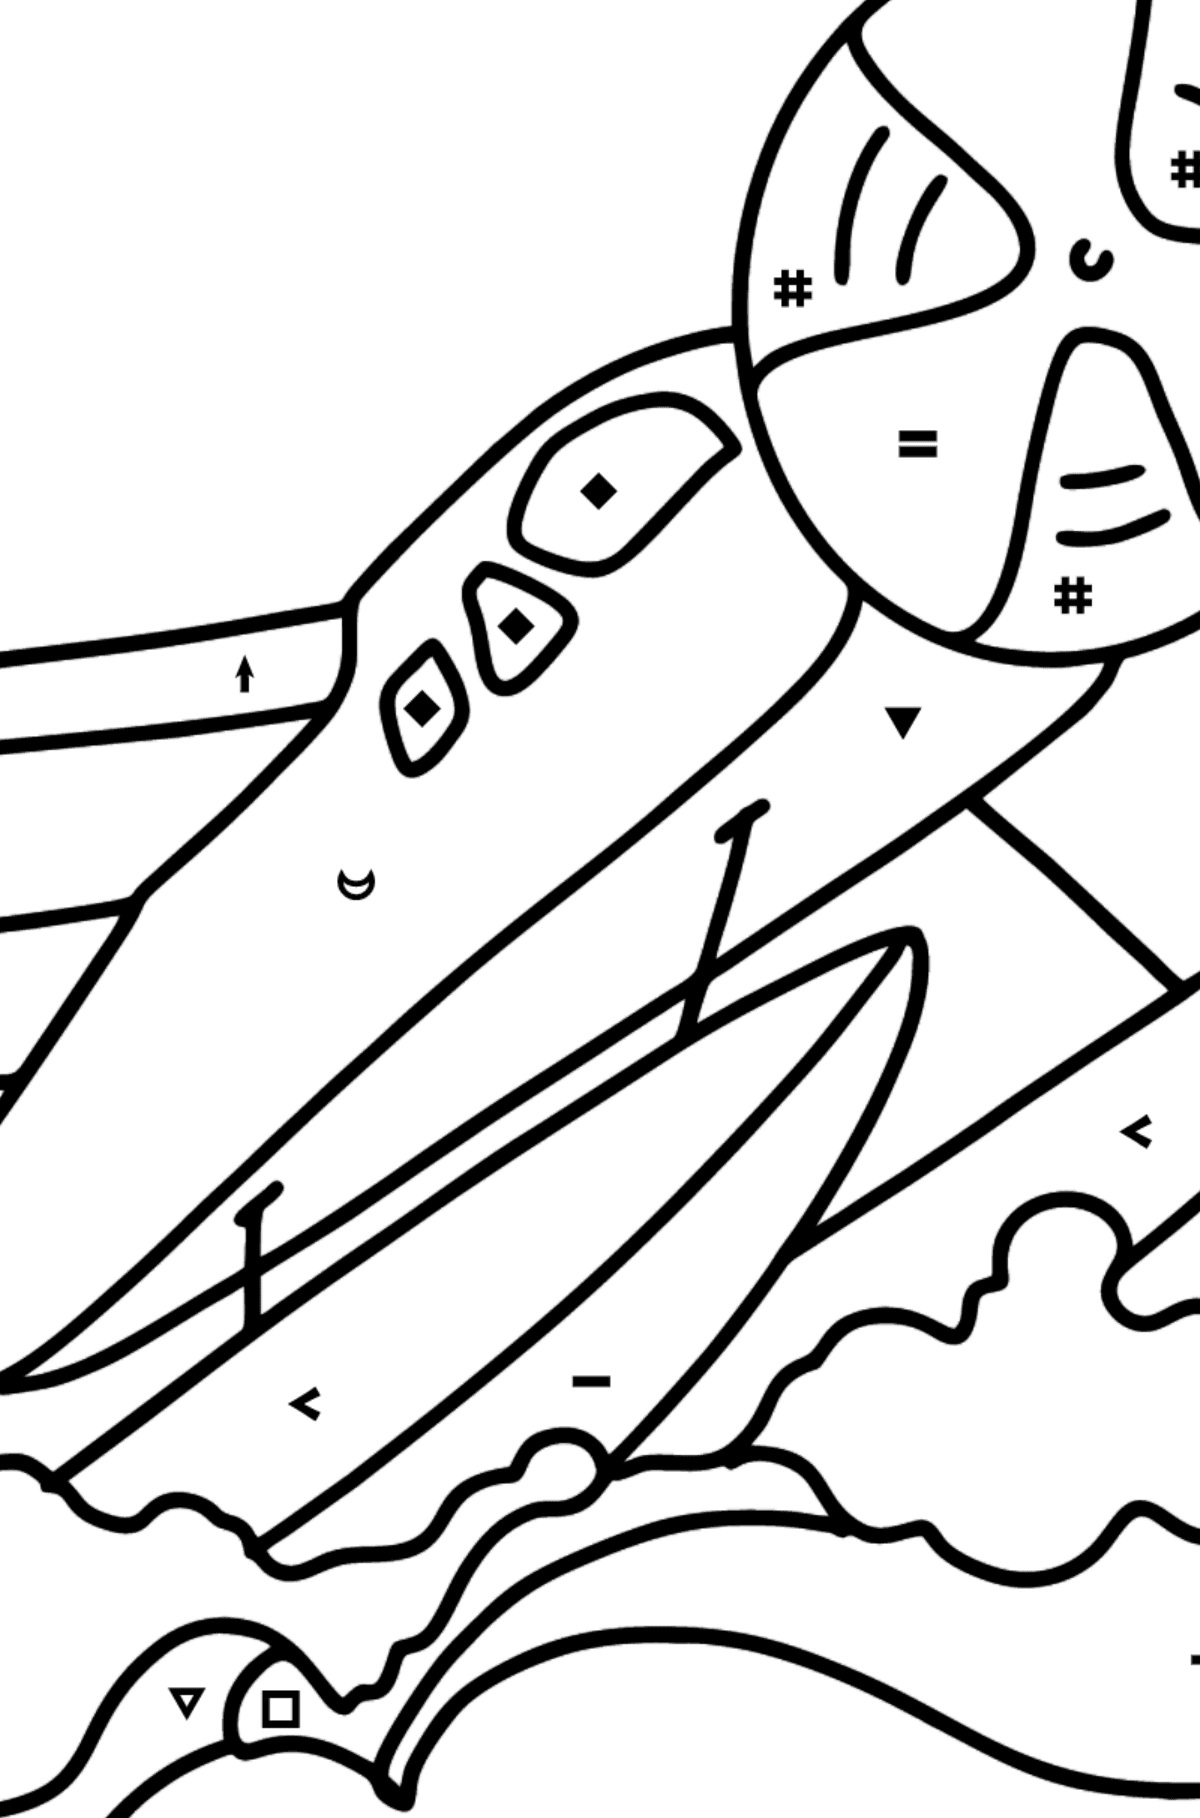 Dibujo de Avión anfibio para colorear - Colorear por Símbolos para Niños